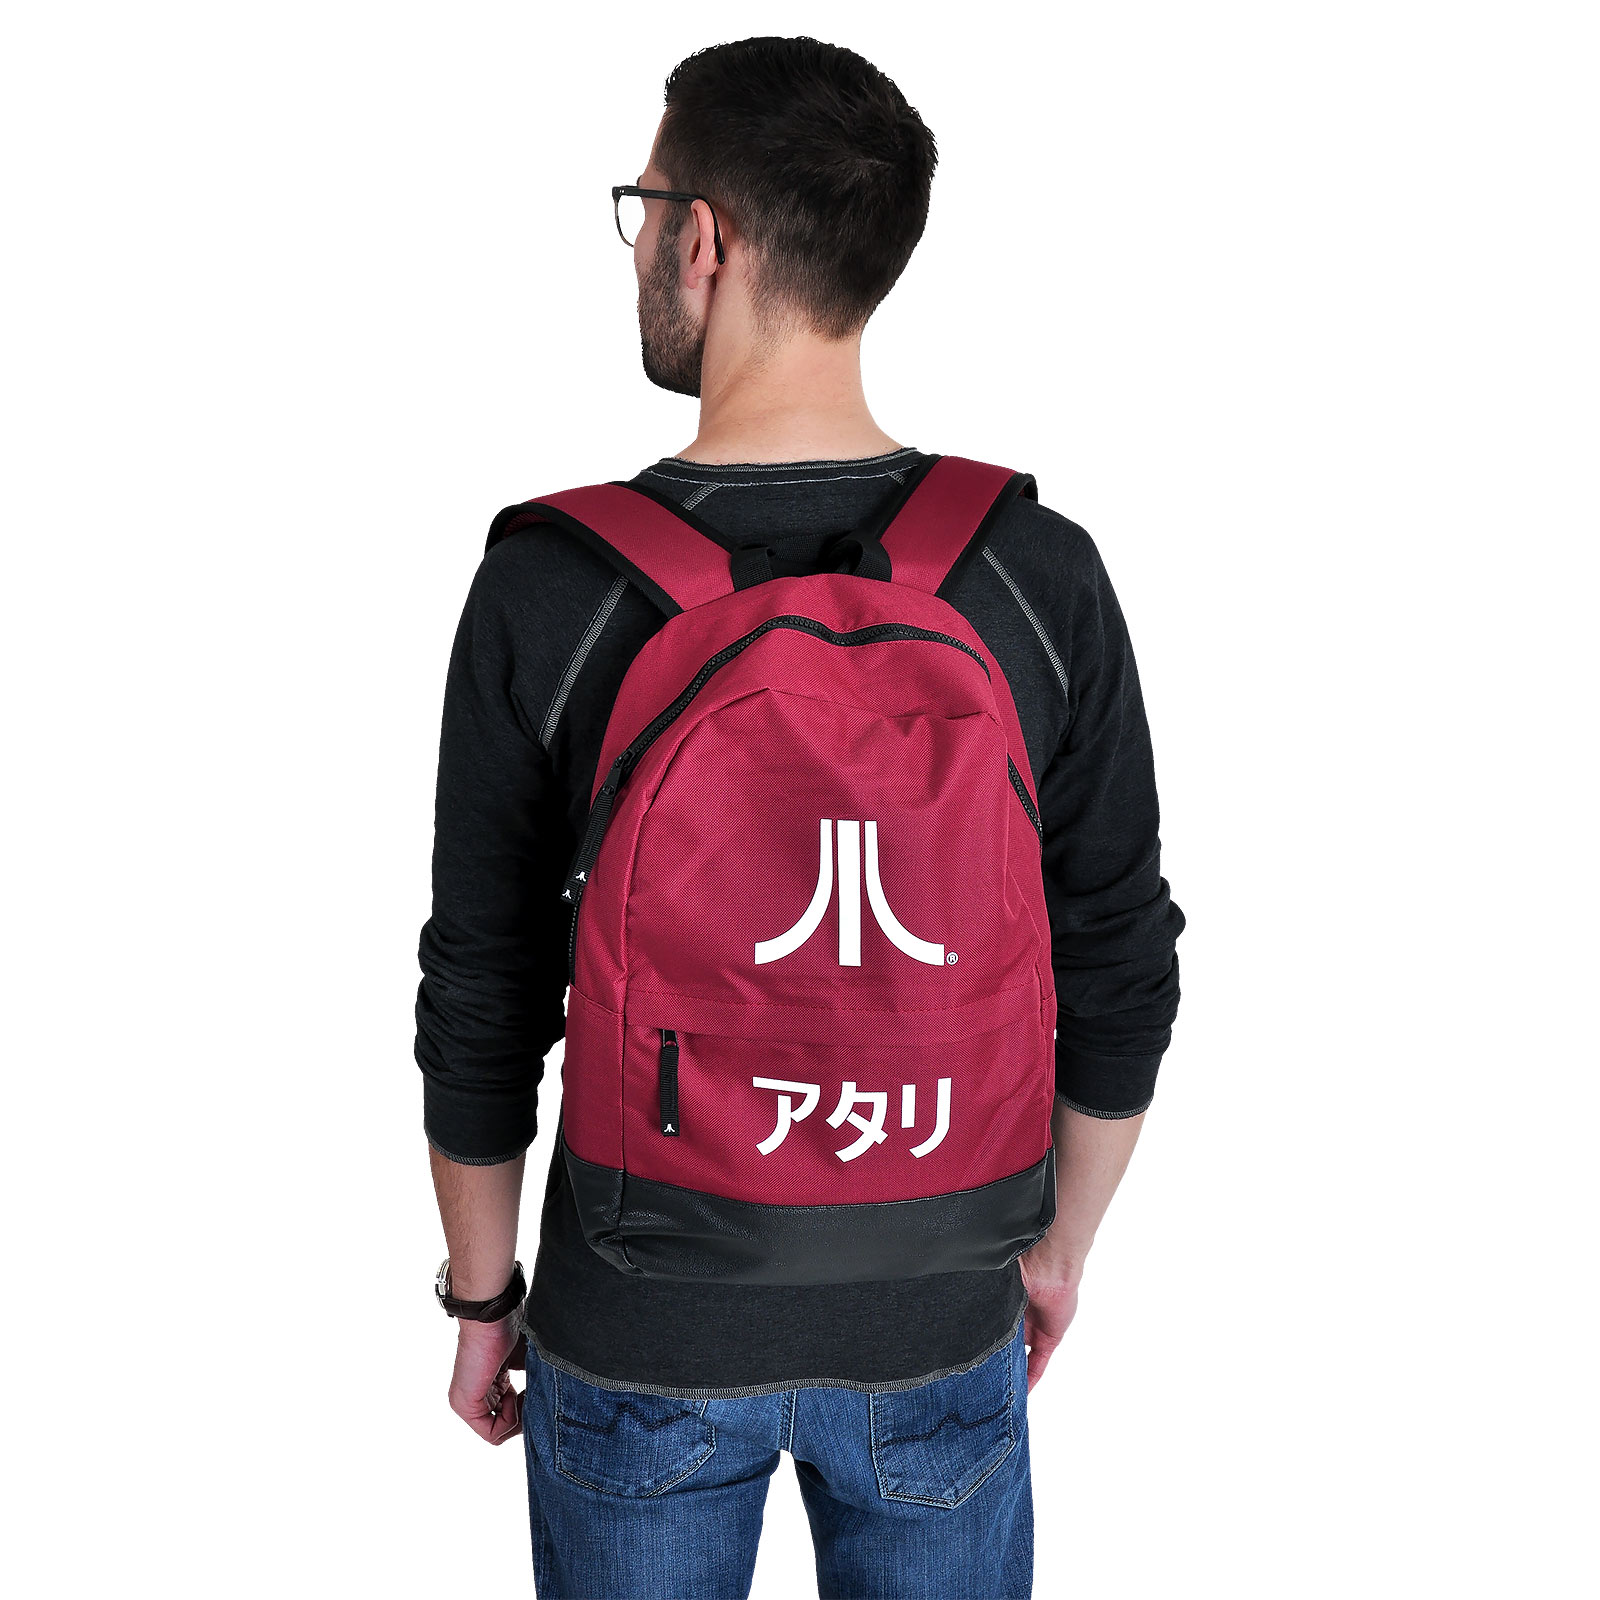 Atari - Logo Backpack